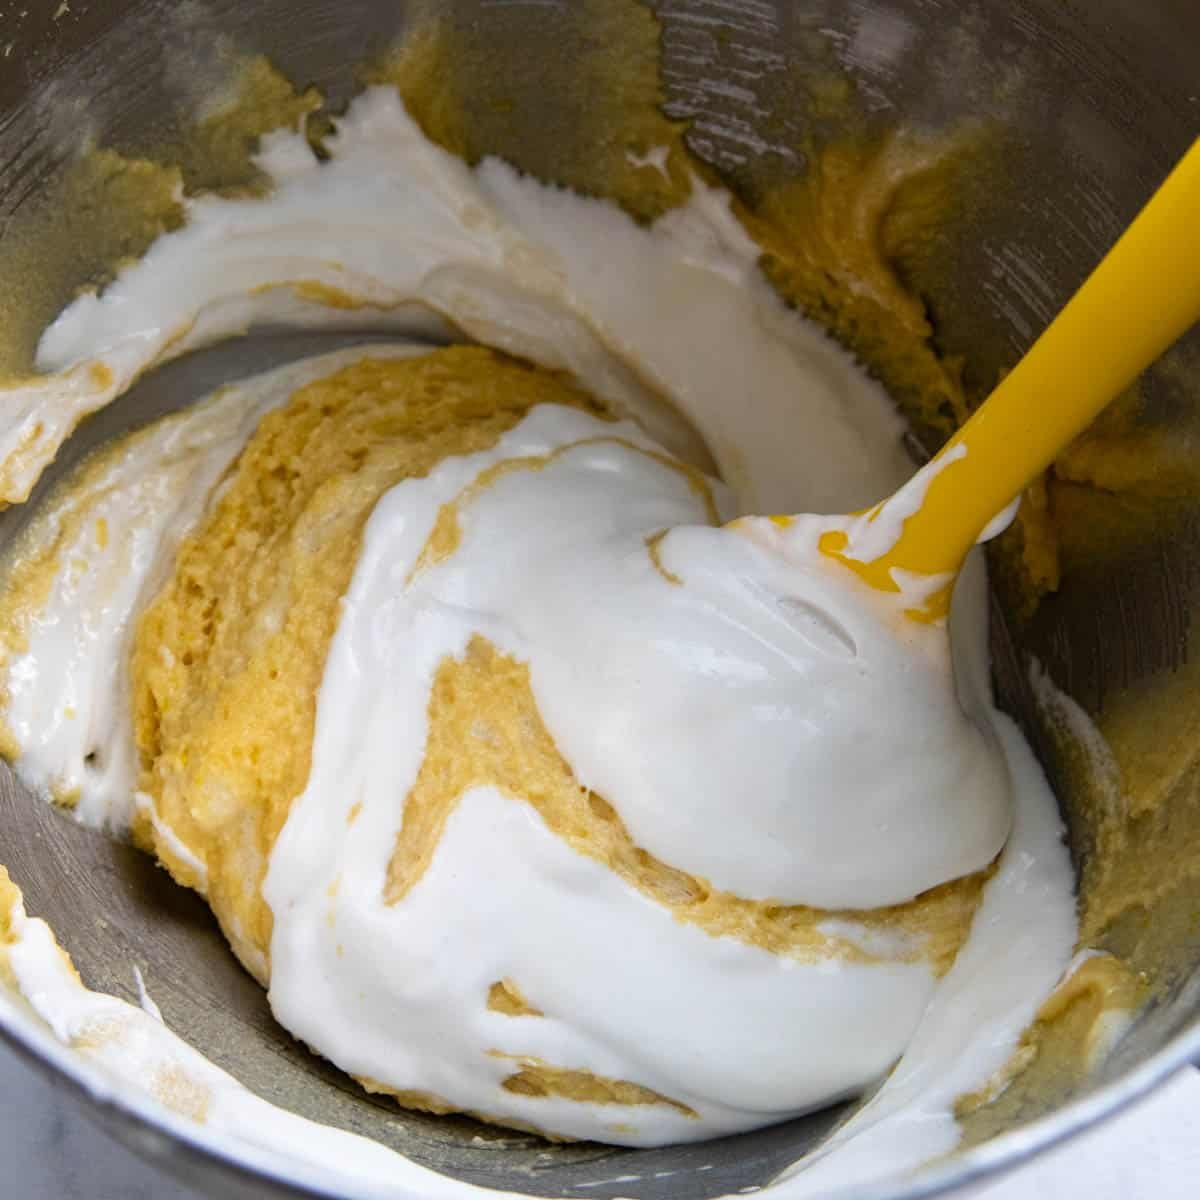 egg whites being folded into almond flour mixture.